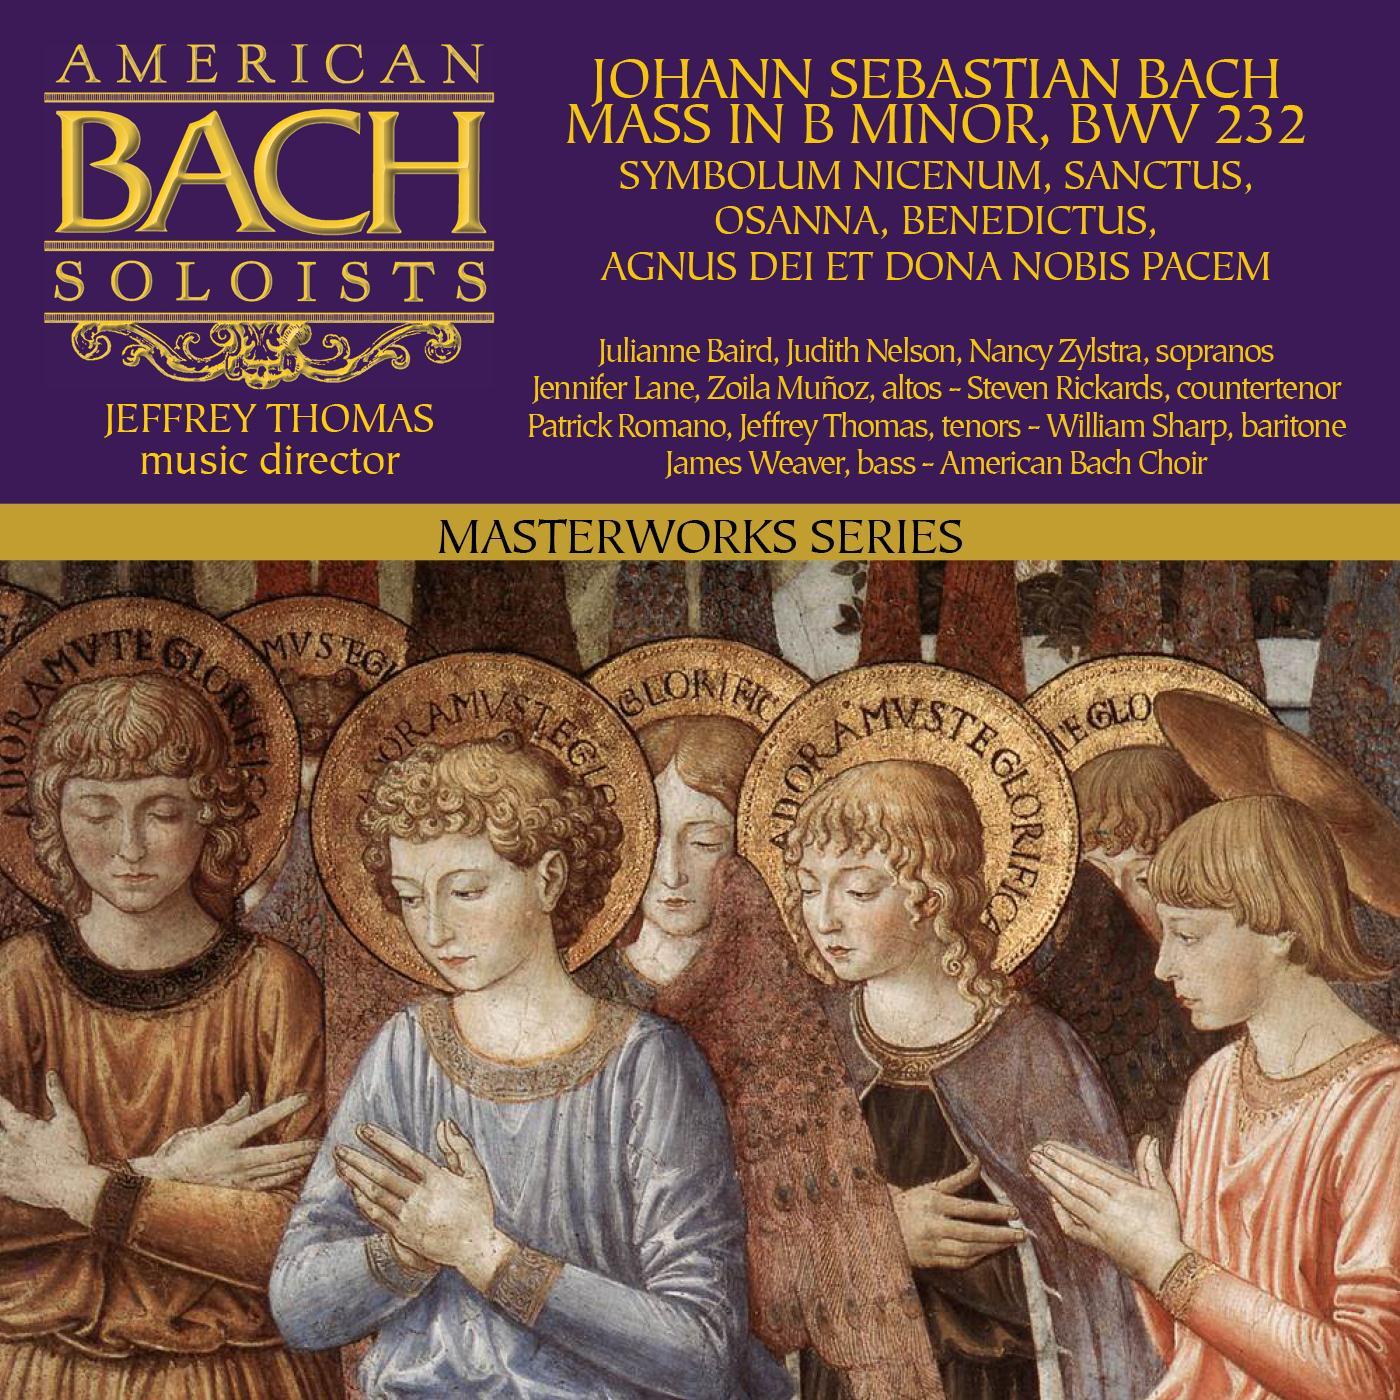 Mass in B Minor, BWV 232 Chorus: Et expecto